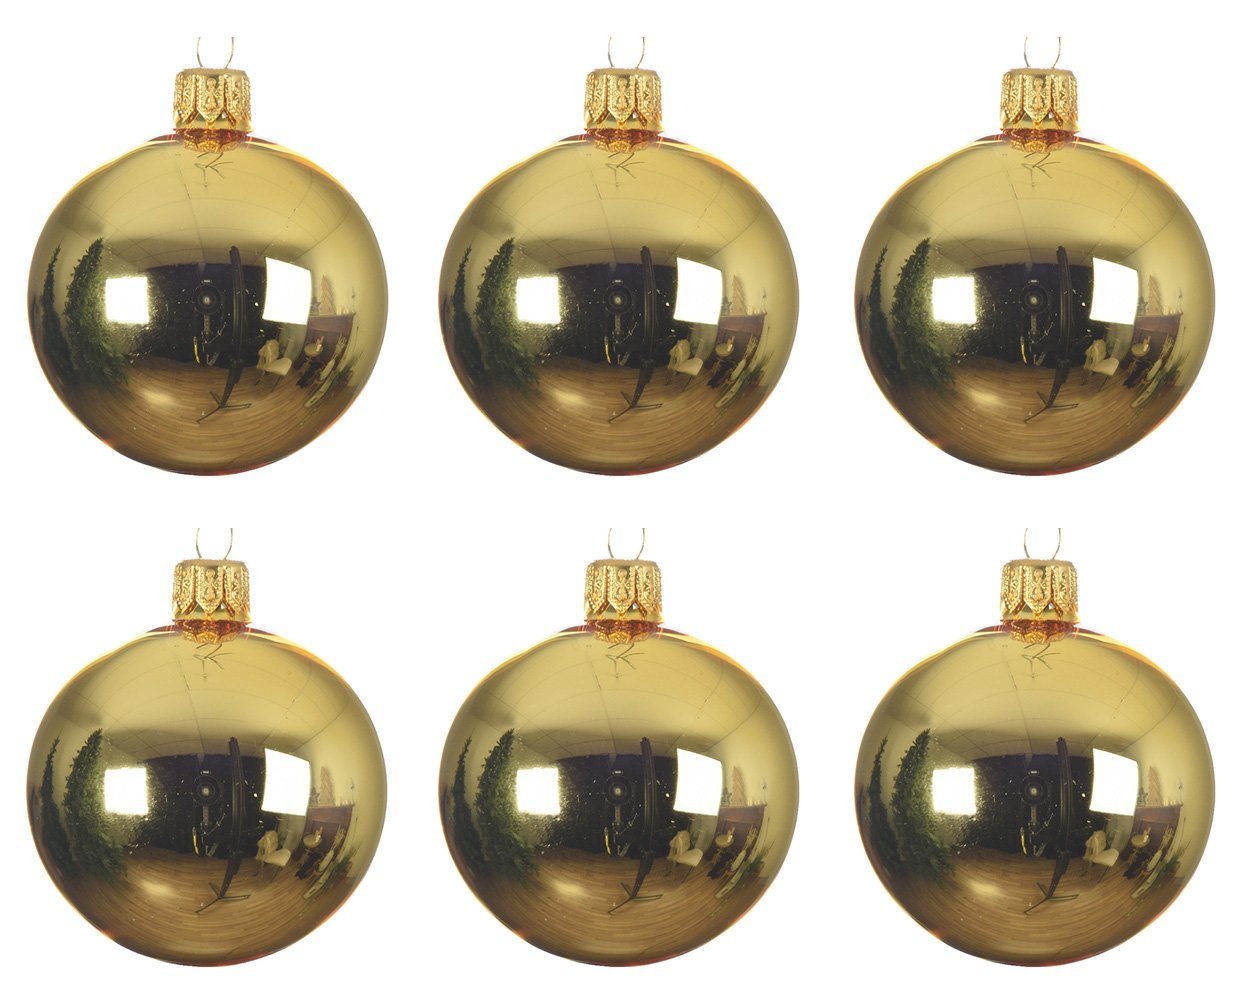 Glas season mundgeblasen Box Weihnachtsbaumkugel, Weihnachtskugeln 6cm glänzend Decoris - decorations Hellgold 6er